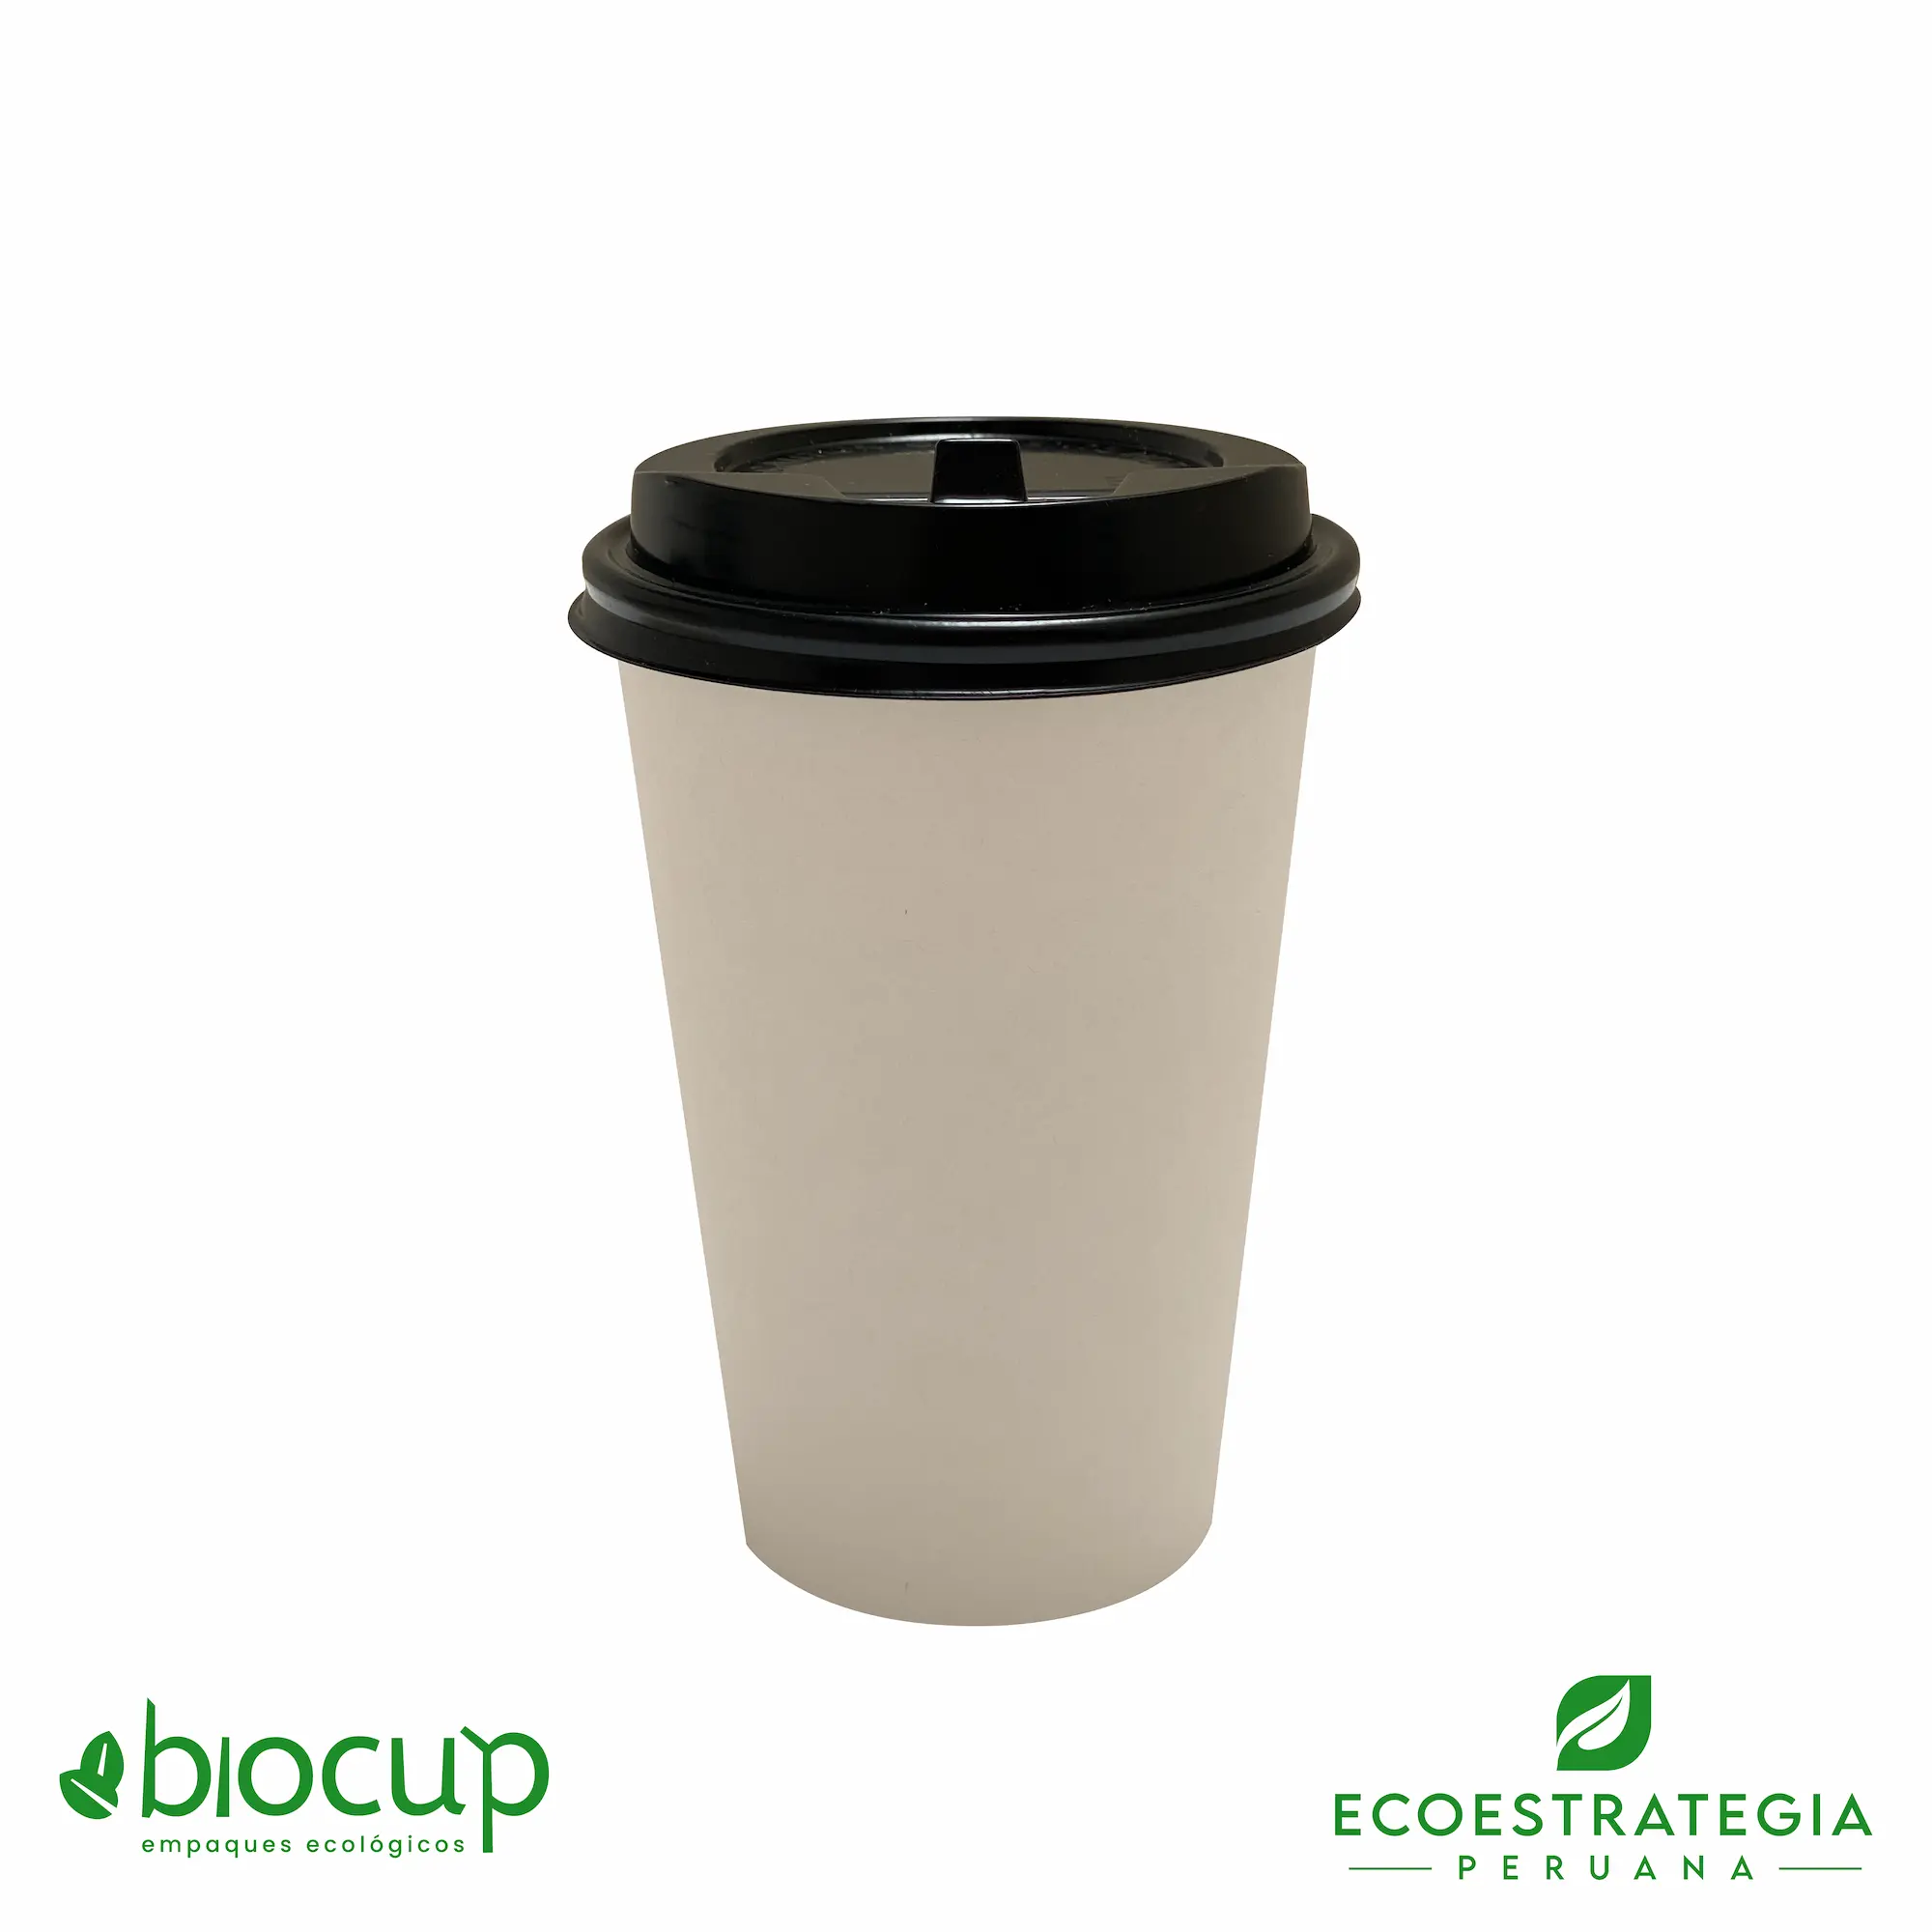 Este vaso de 14 oz es un producto de materiales biodegradables y compostables, hecho a base de fibra de bambú. Cotiza tus vasos para bebidas frias o calientes